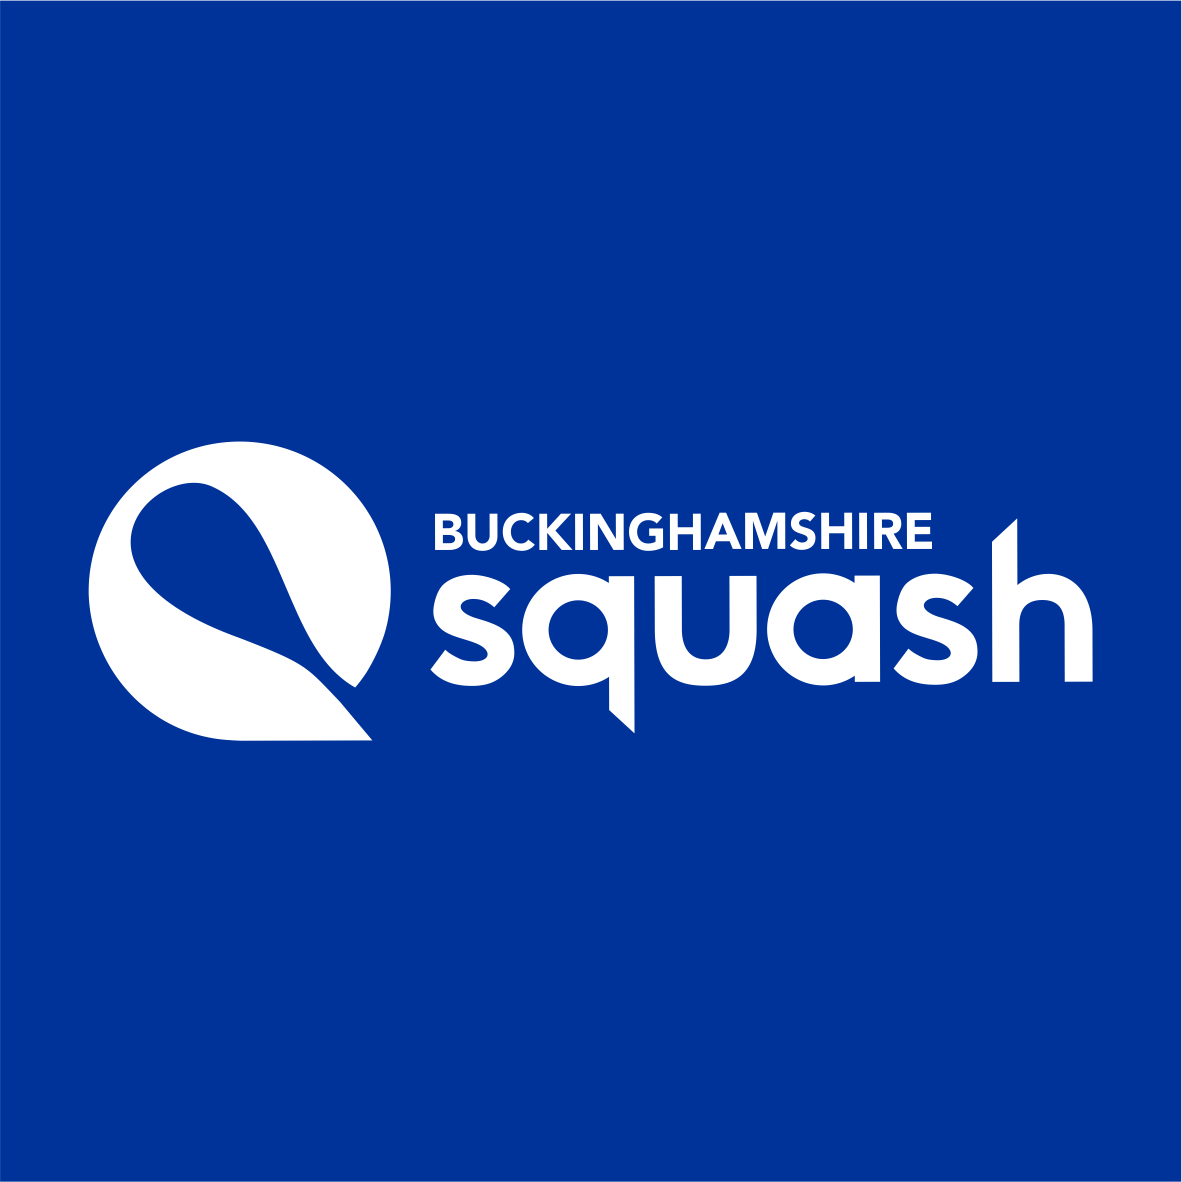 Buckinghamshire Squash